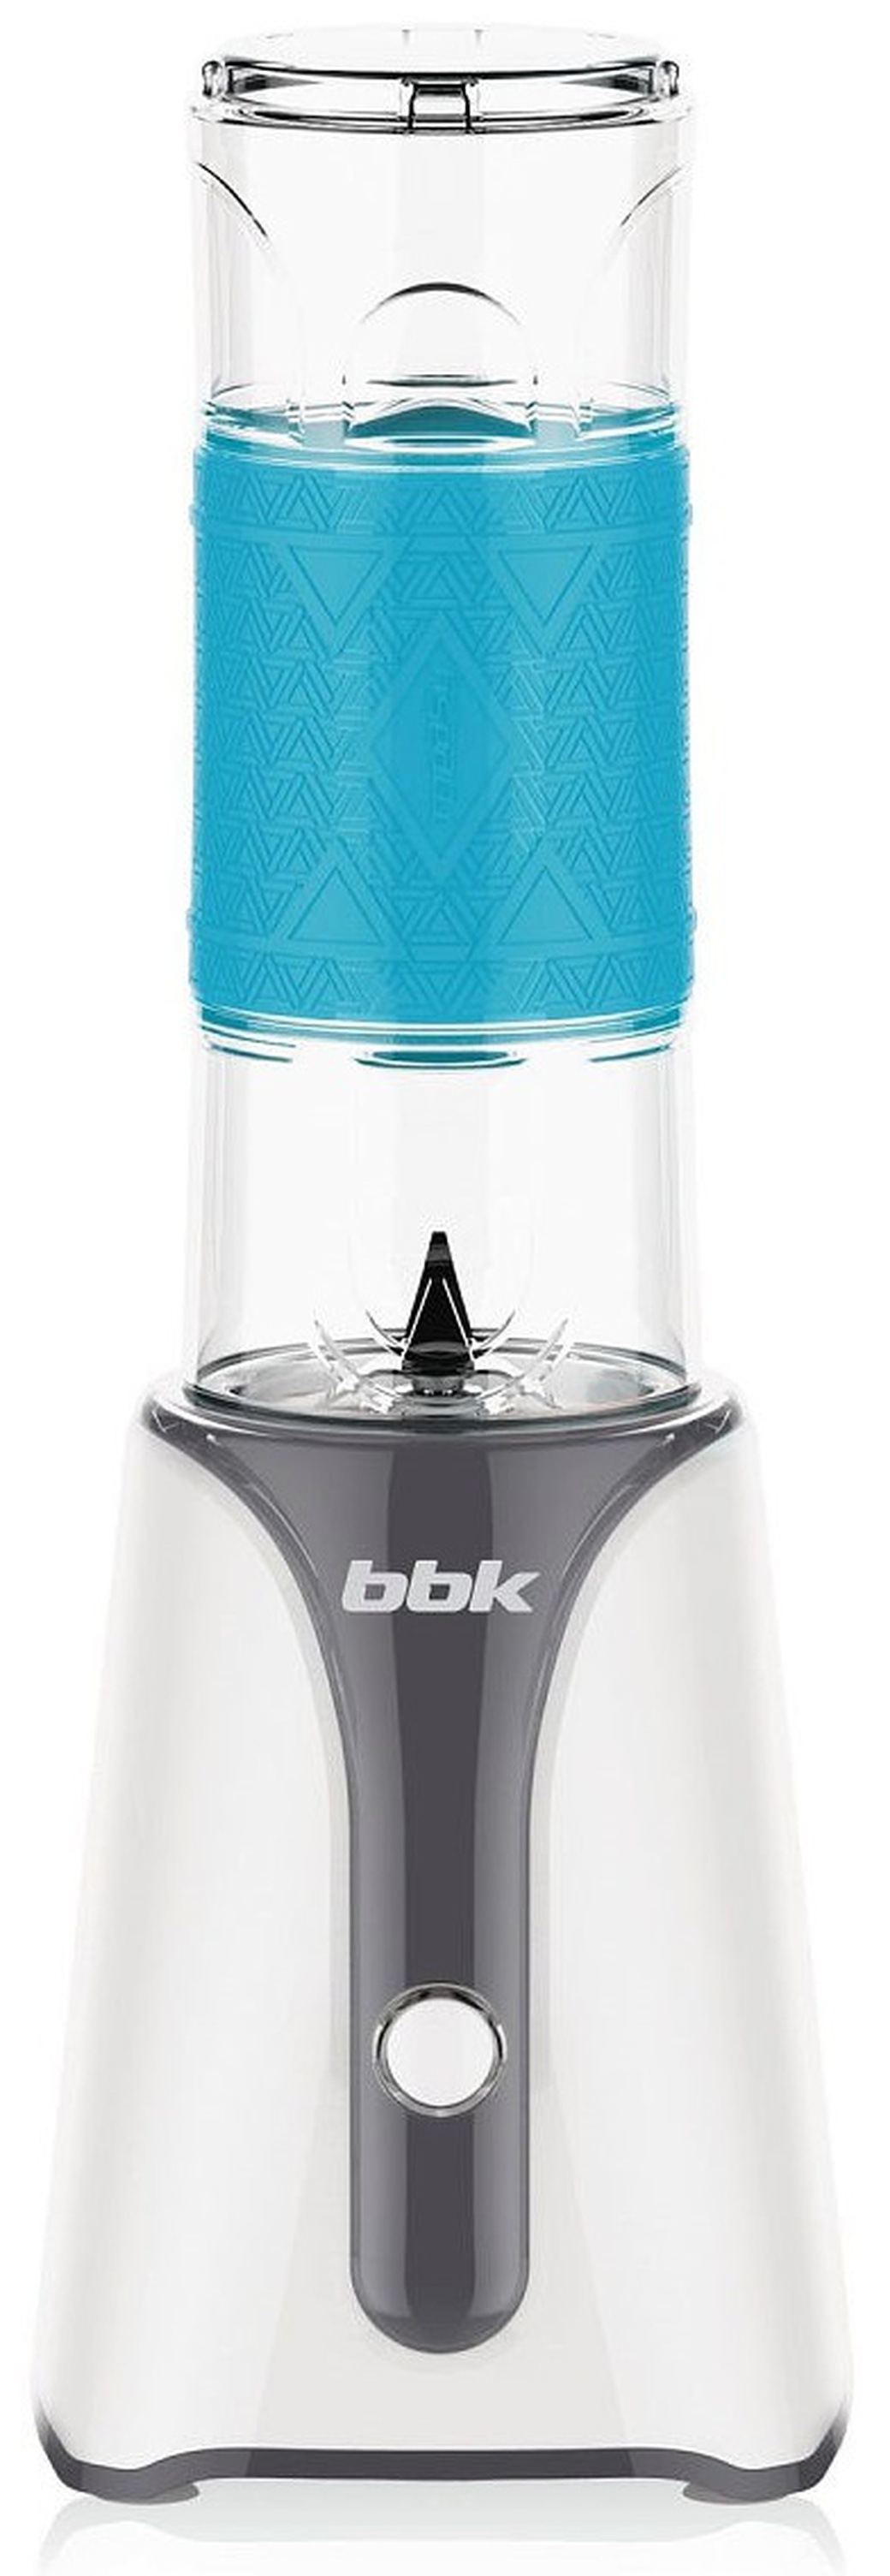 Блендер BBK kbs0352 с/с. BBK kbs0352. Блендер BBK kbh0405, белый/голубой. Блендер BBK kbs0352 серый.